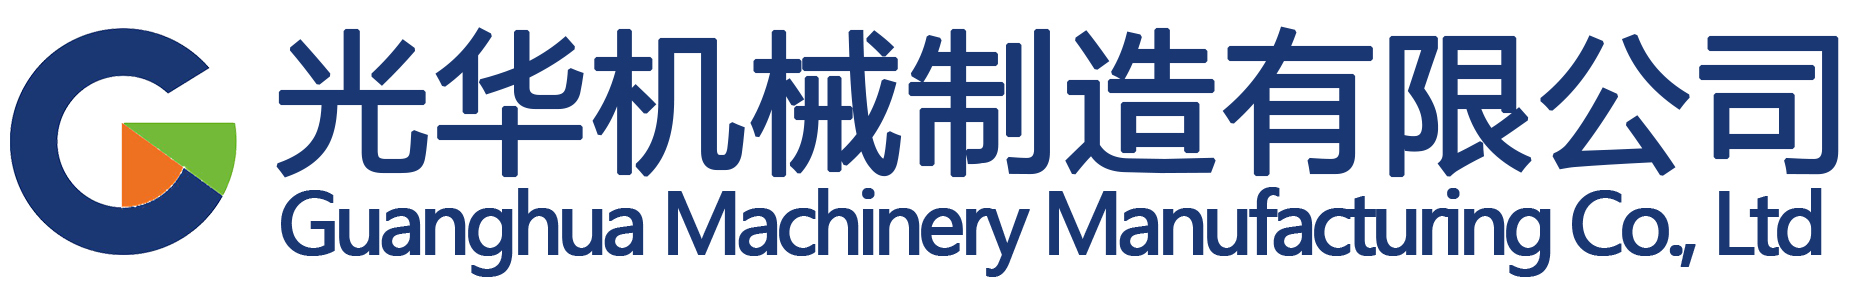 message-Guanghua Machinery Intelligent Portal Website